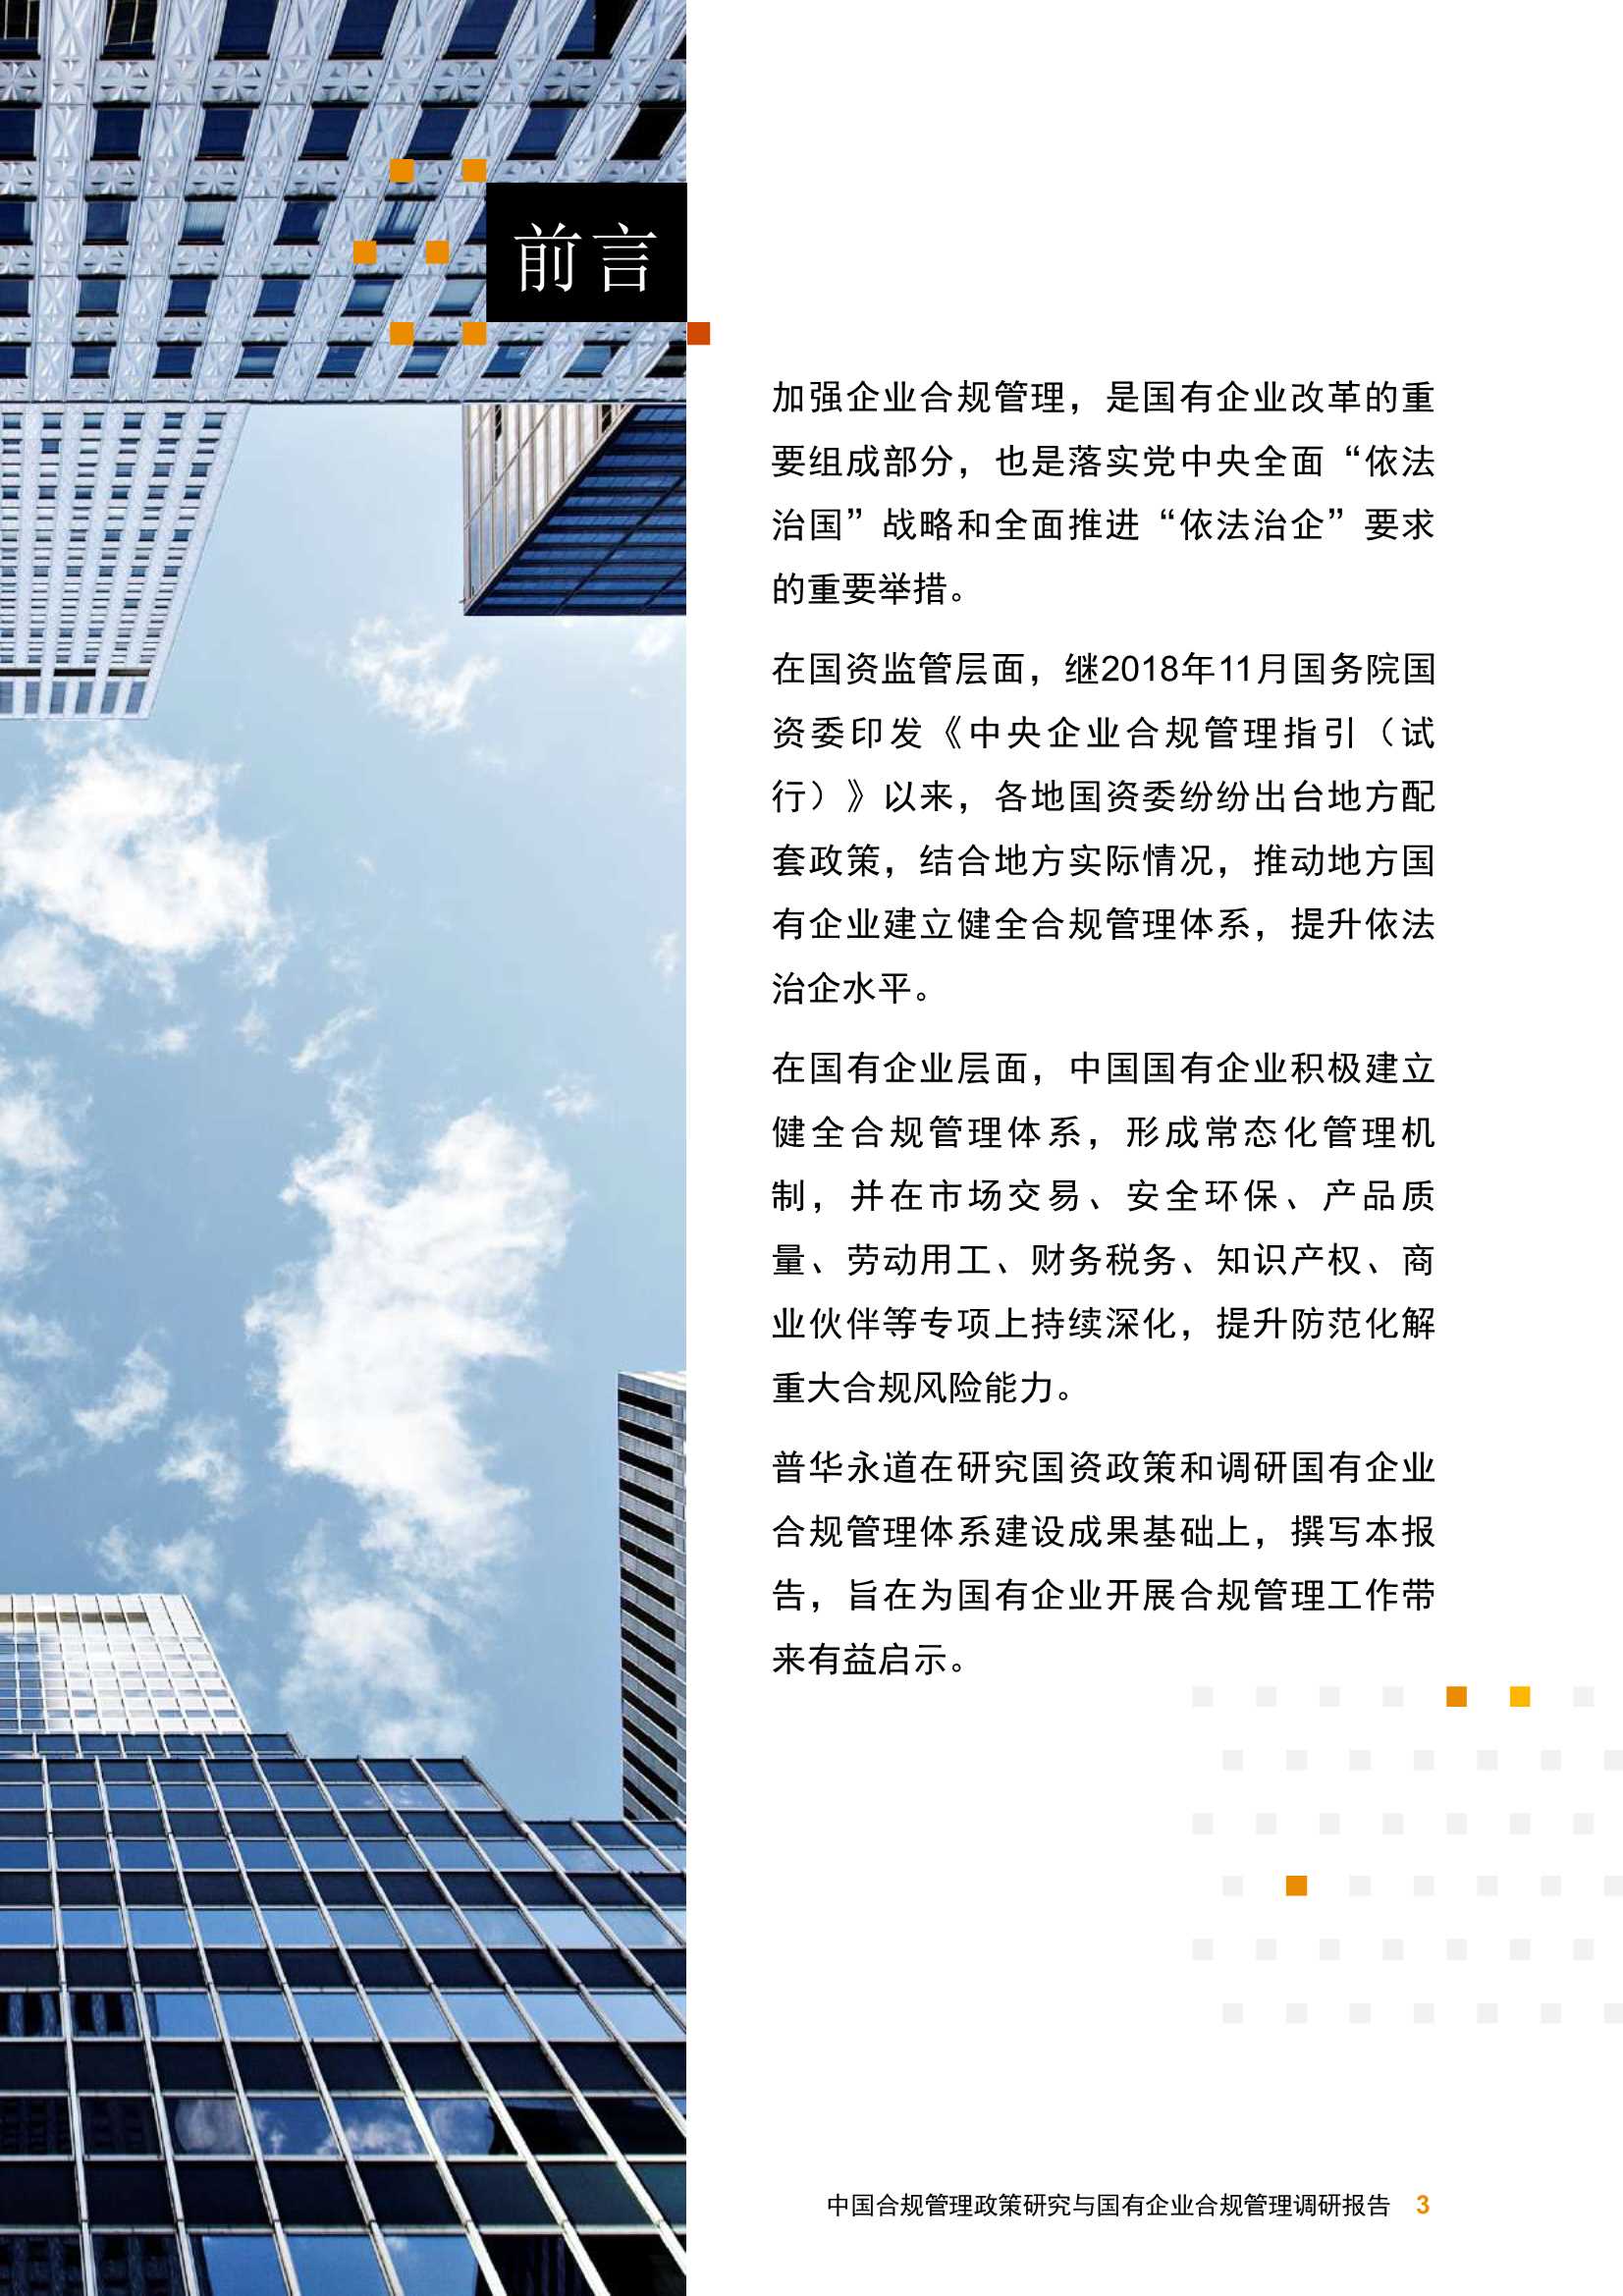 普华永道-中国合规管理政策研究与国有企业合规管理调研报告-2021.11-20页